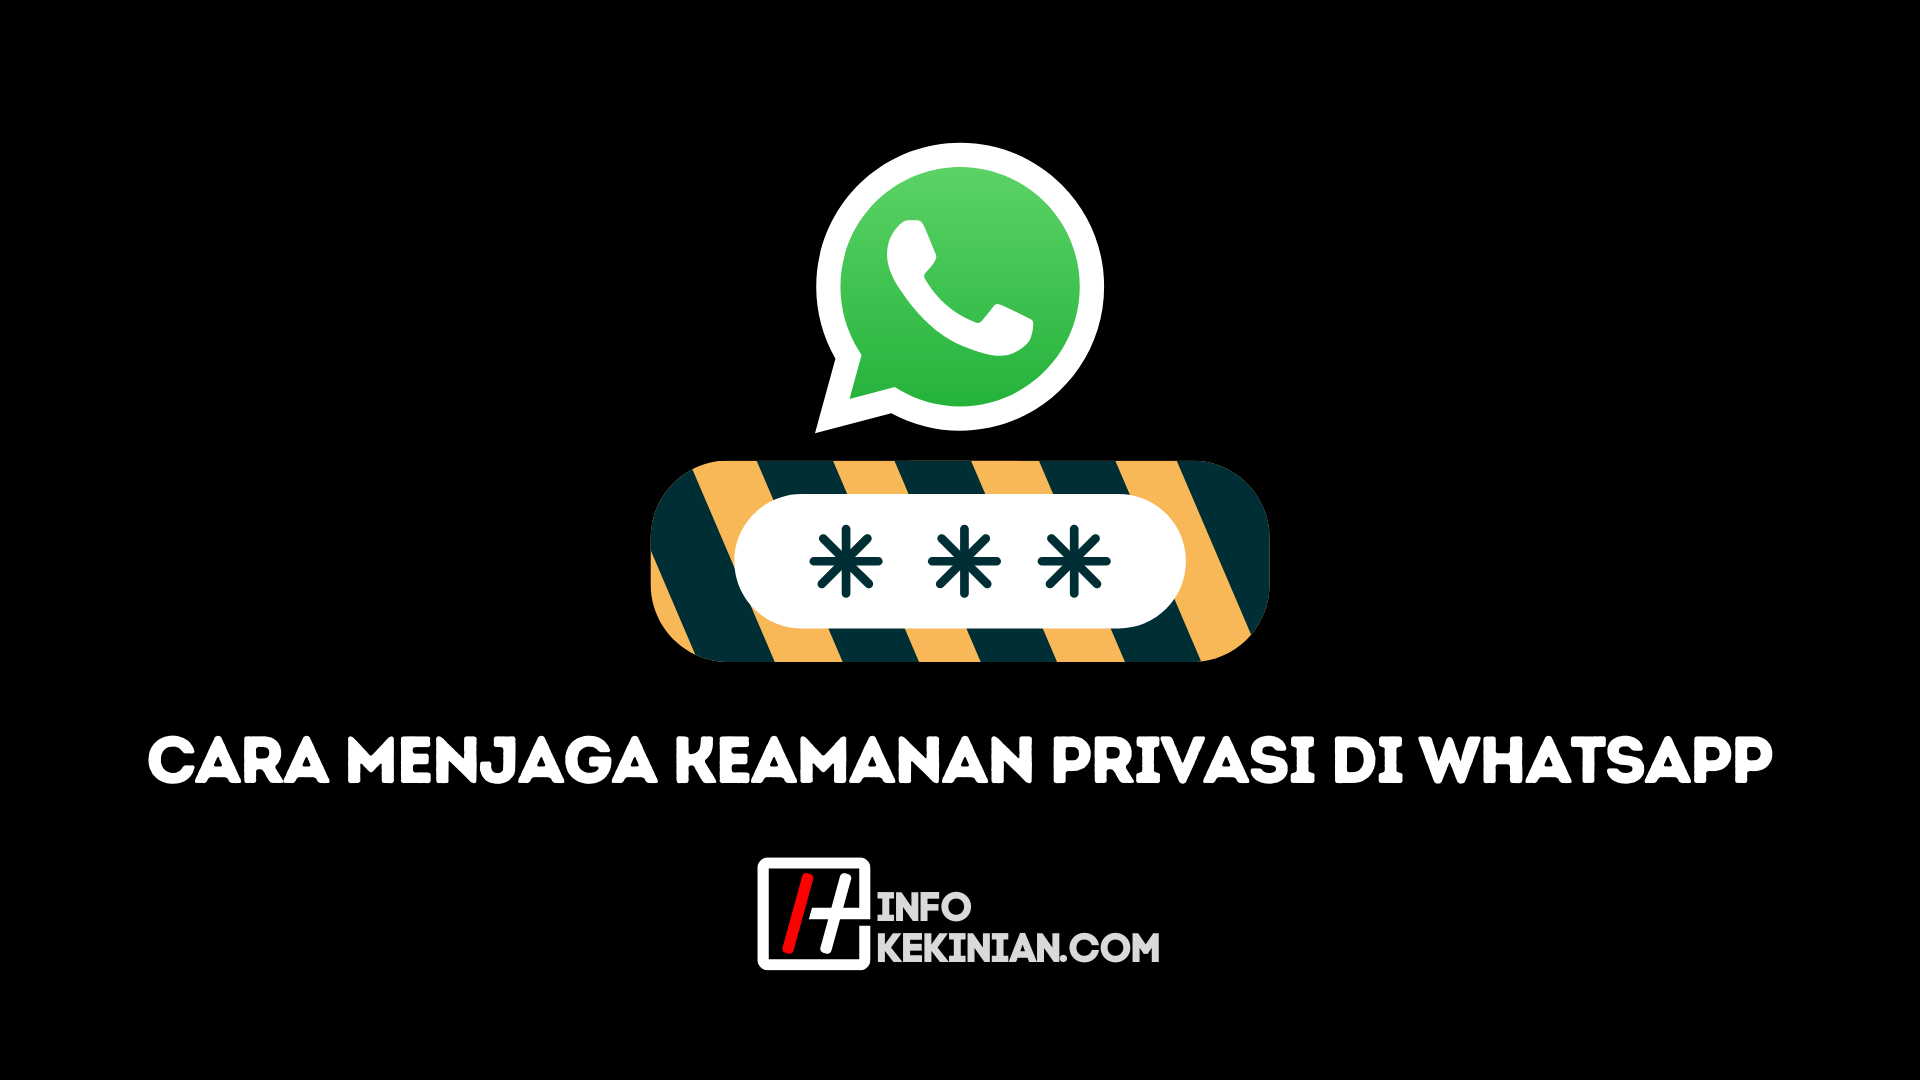 Cara Menjaga Privasi WhatsApp